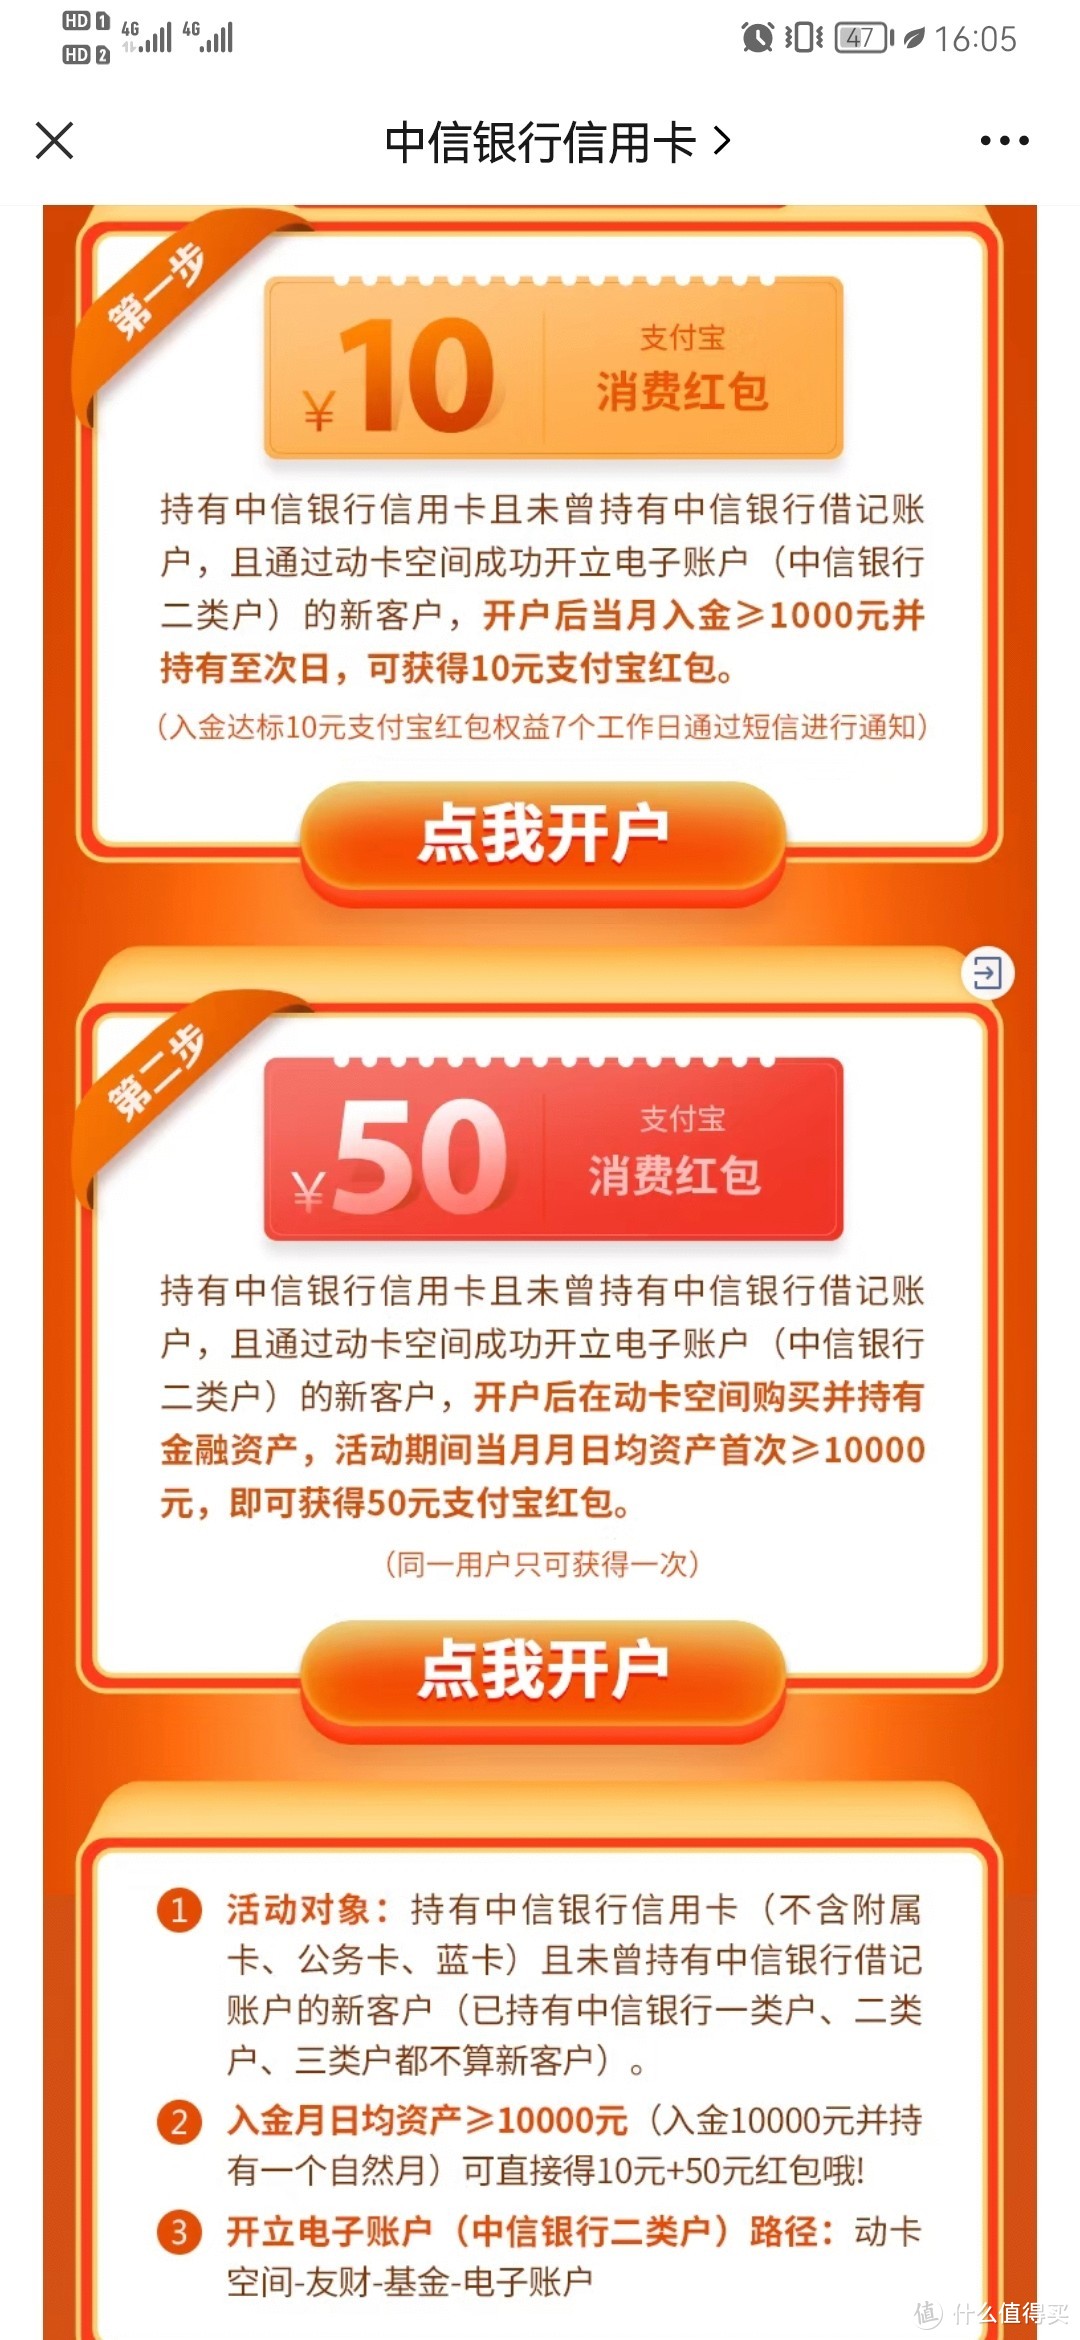 中信银行电子账户新客开户最高享60元支付宝红包